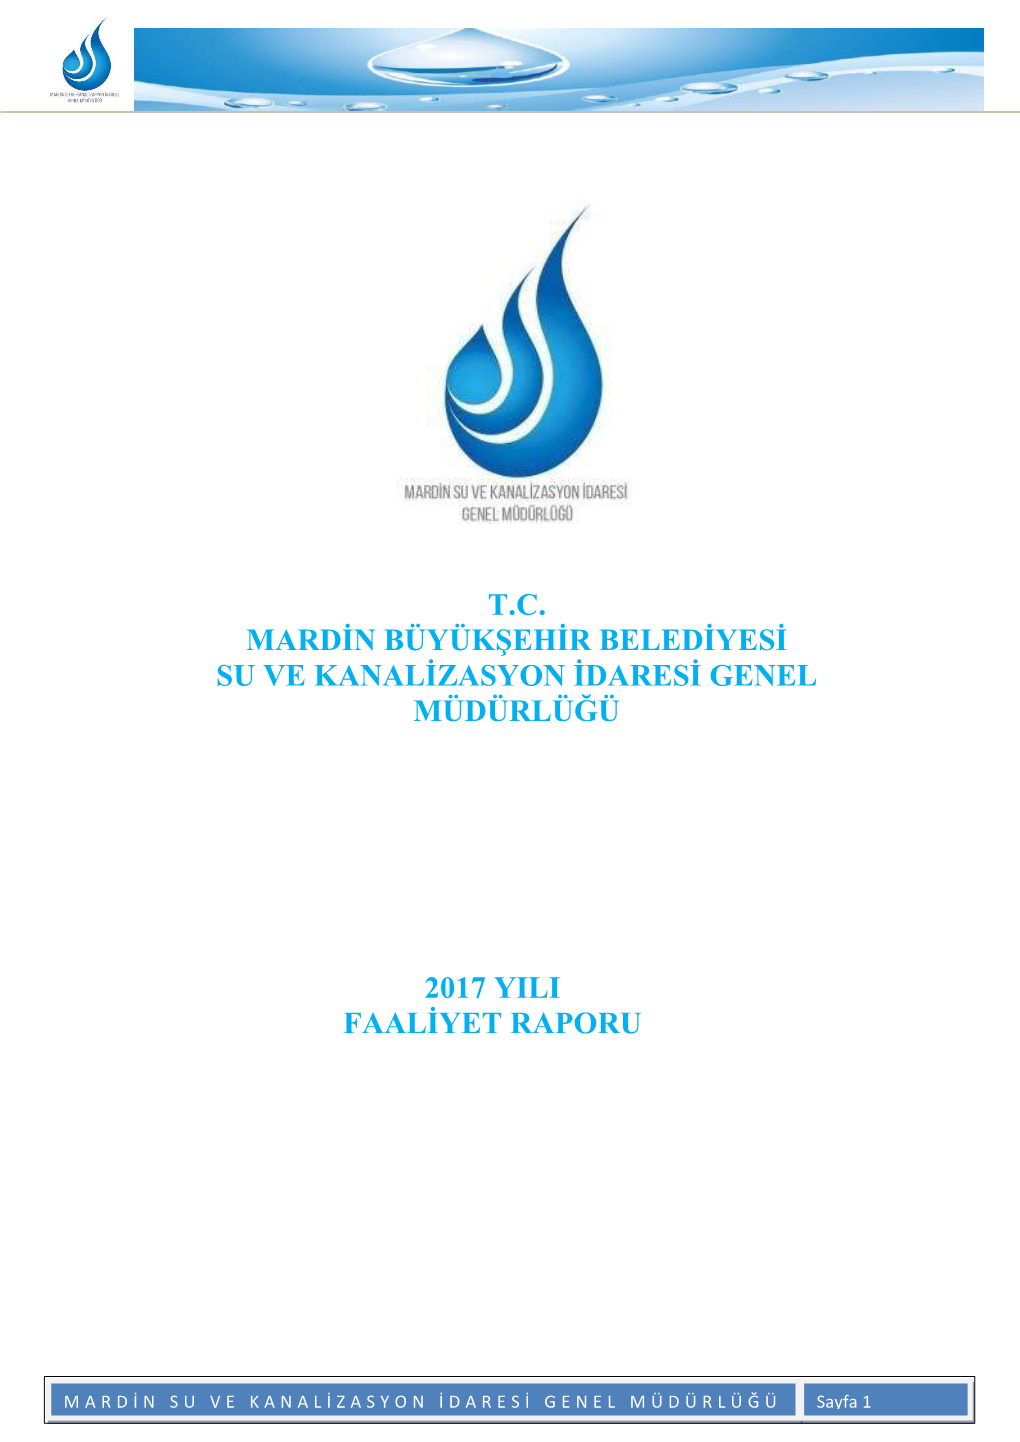 T.C. Mardin Büyükşehir Belediyesi Su Ve Kanalizasyon Idaresi Genel Müdürlüğü